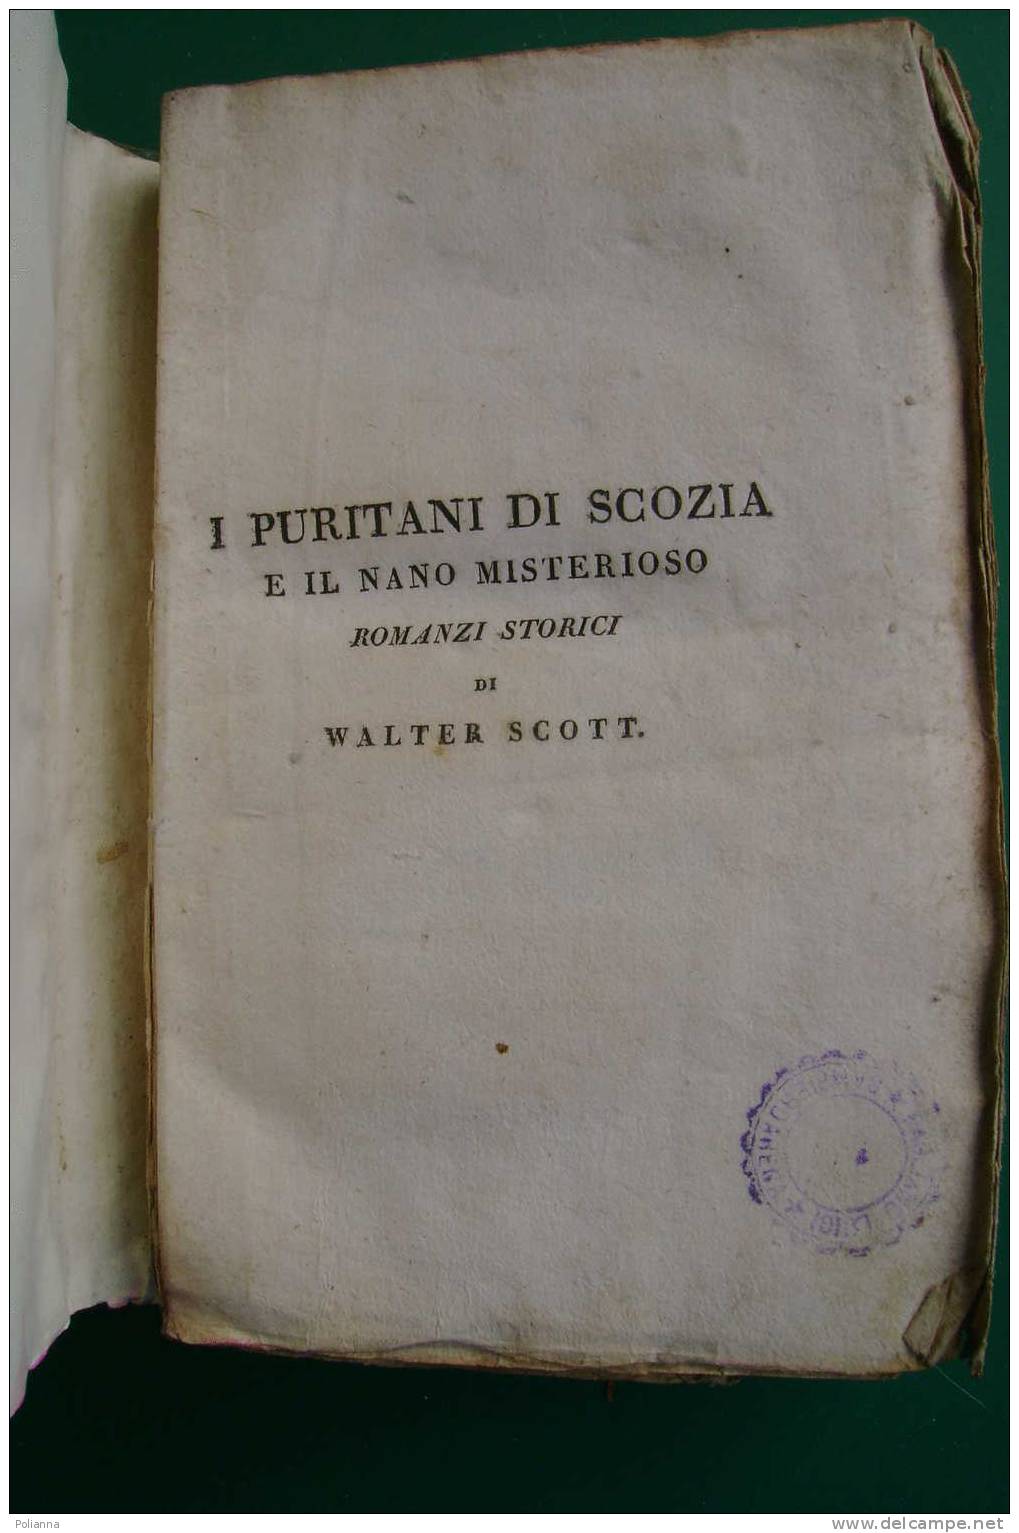 PDE/55 W.Scott I PURITANI DI SCOZIA E IL NANO MISTERIOSO Tomo III - Tipografia Di Commercio 1822 - Antiquariat